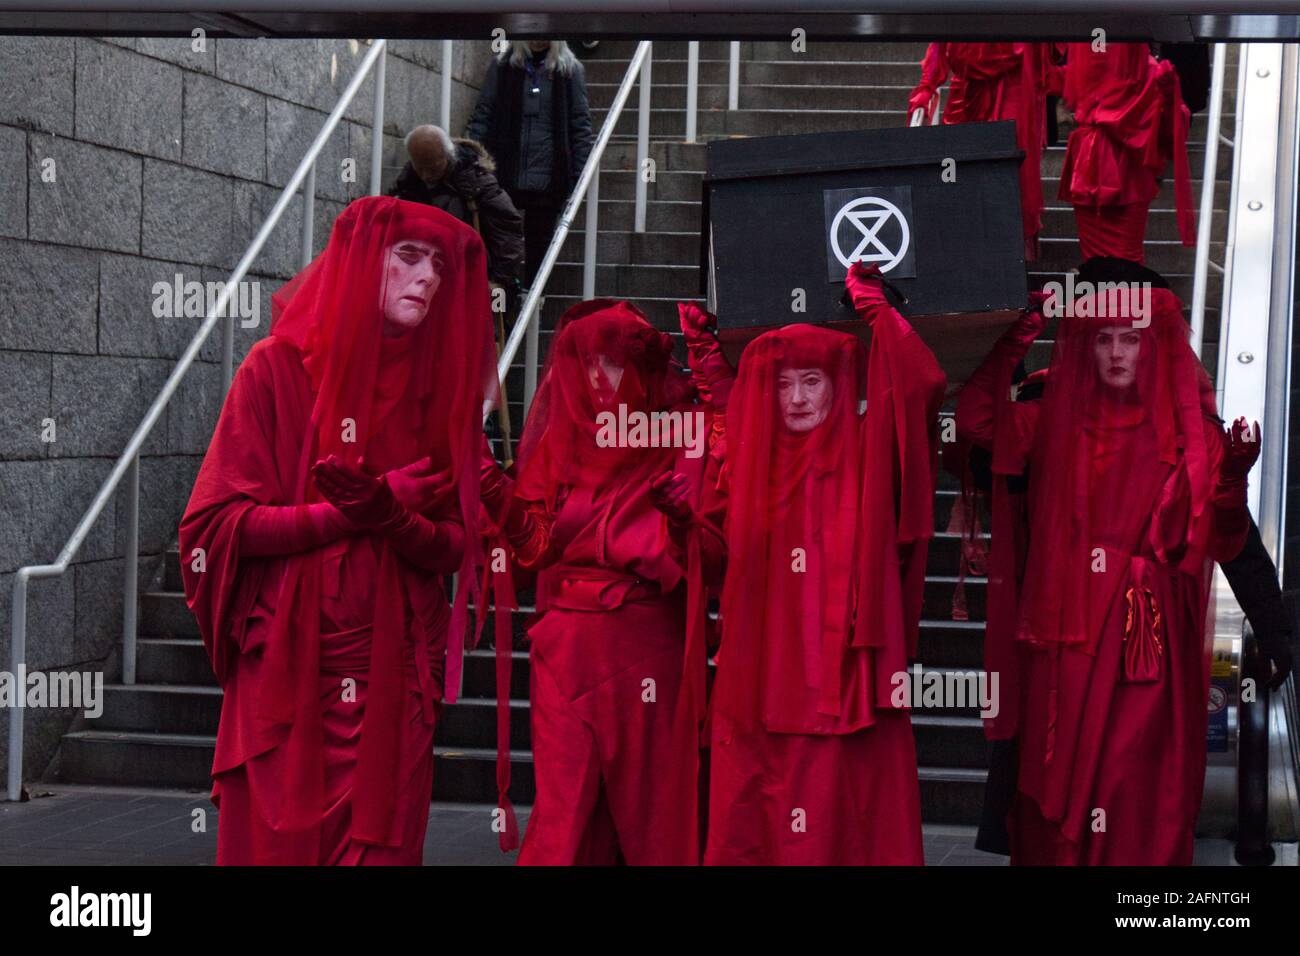 Vancouver, Canada - Nov 29, 2019 : un groupe de rébellion d'extinction est l'hôte d'un salon funéraire à l'Extinction portant des robes rouges près de la gare de train aérien Burrard Banque D'Images